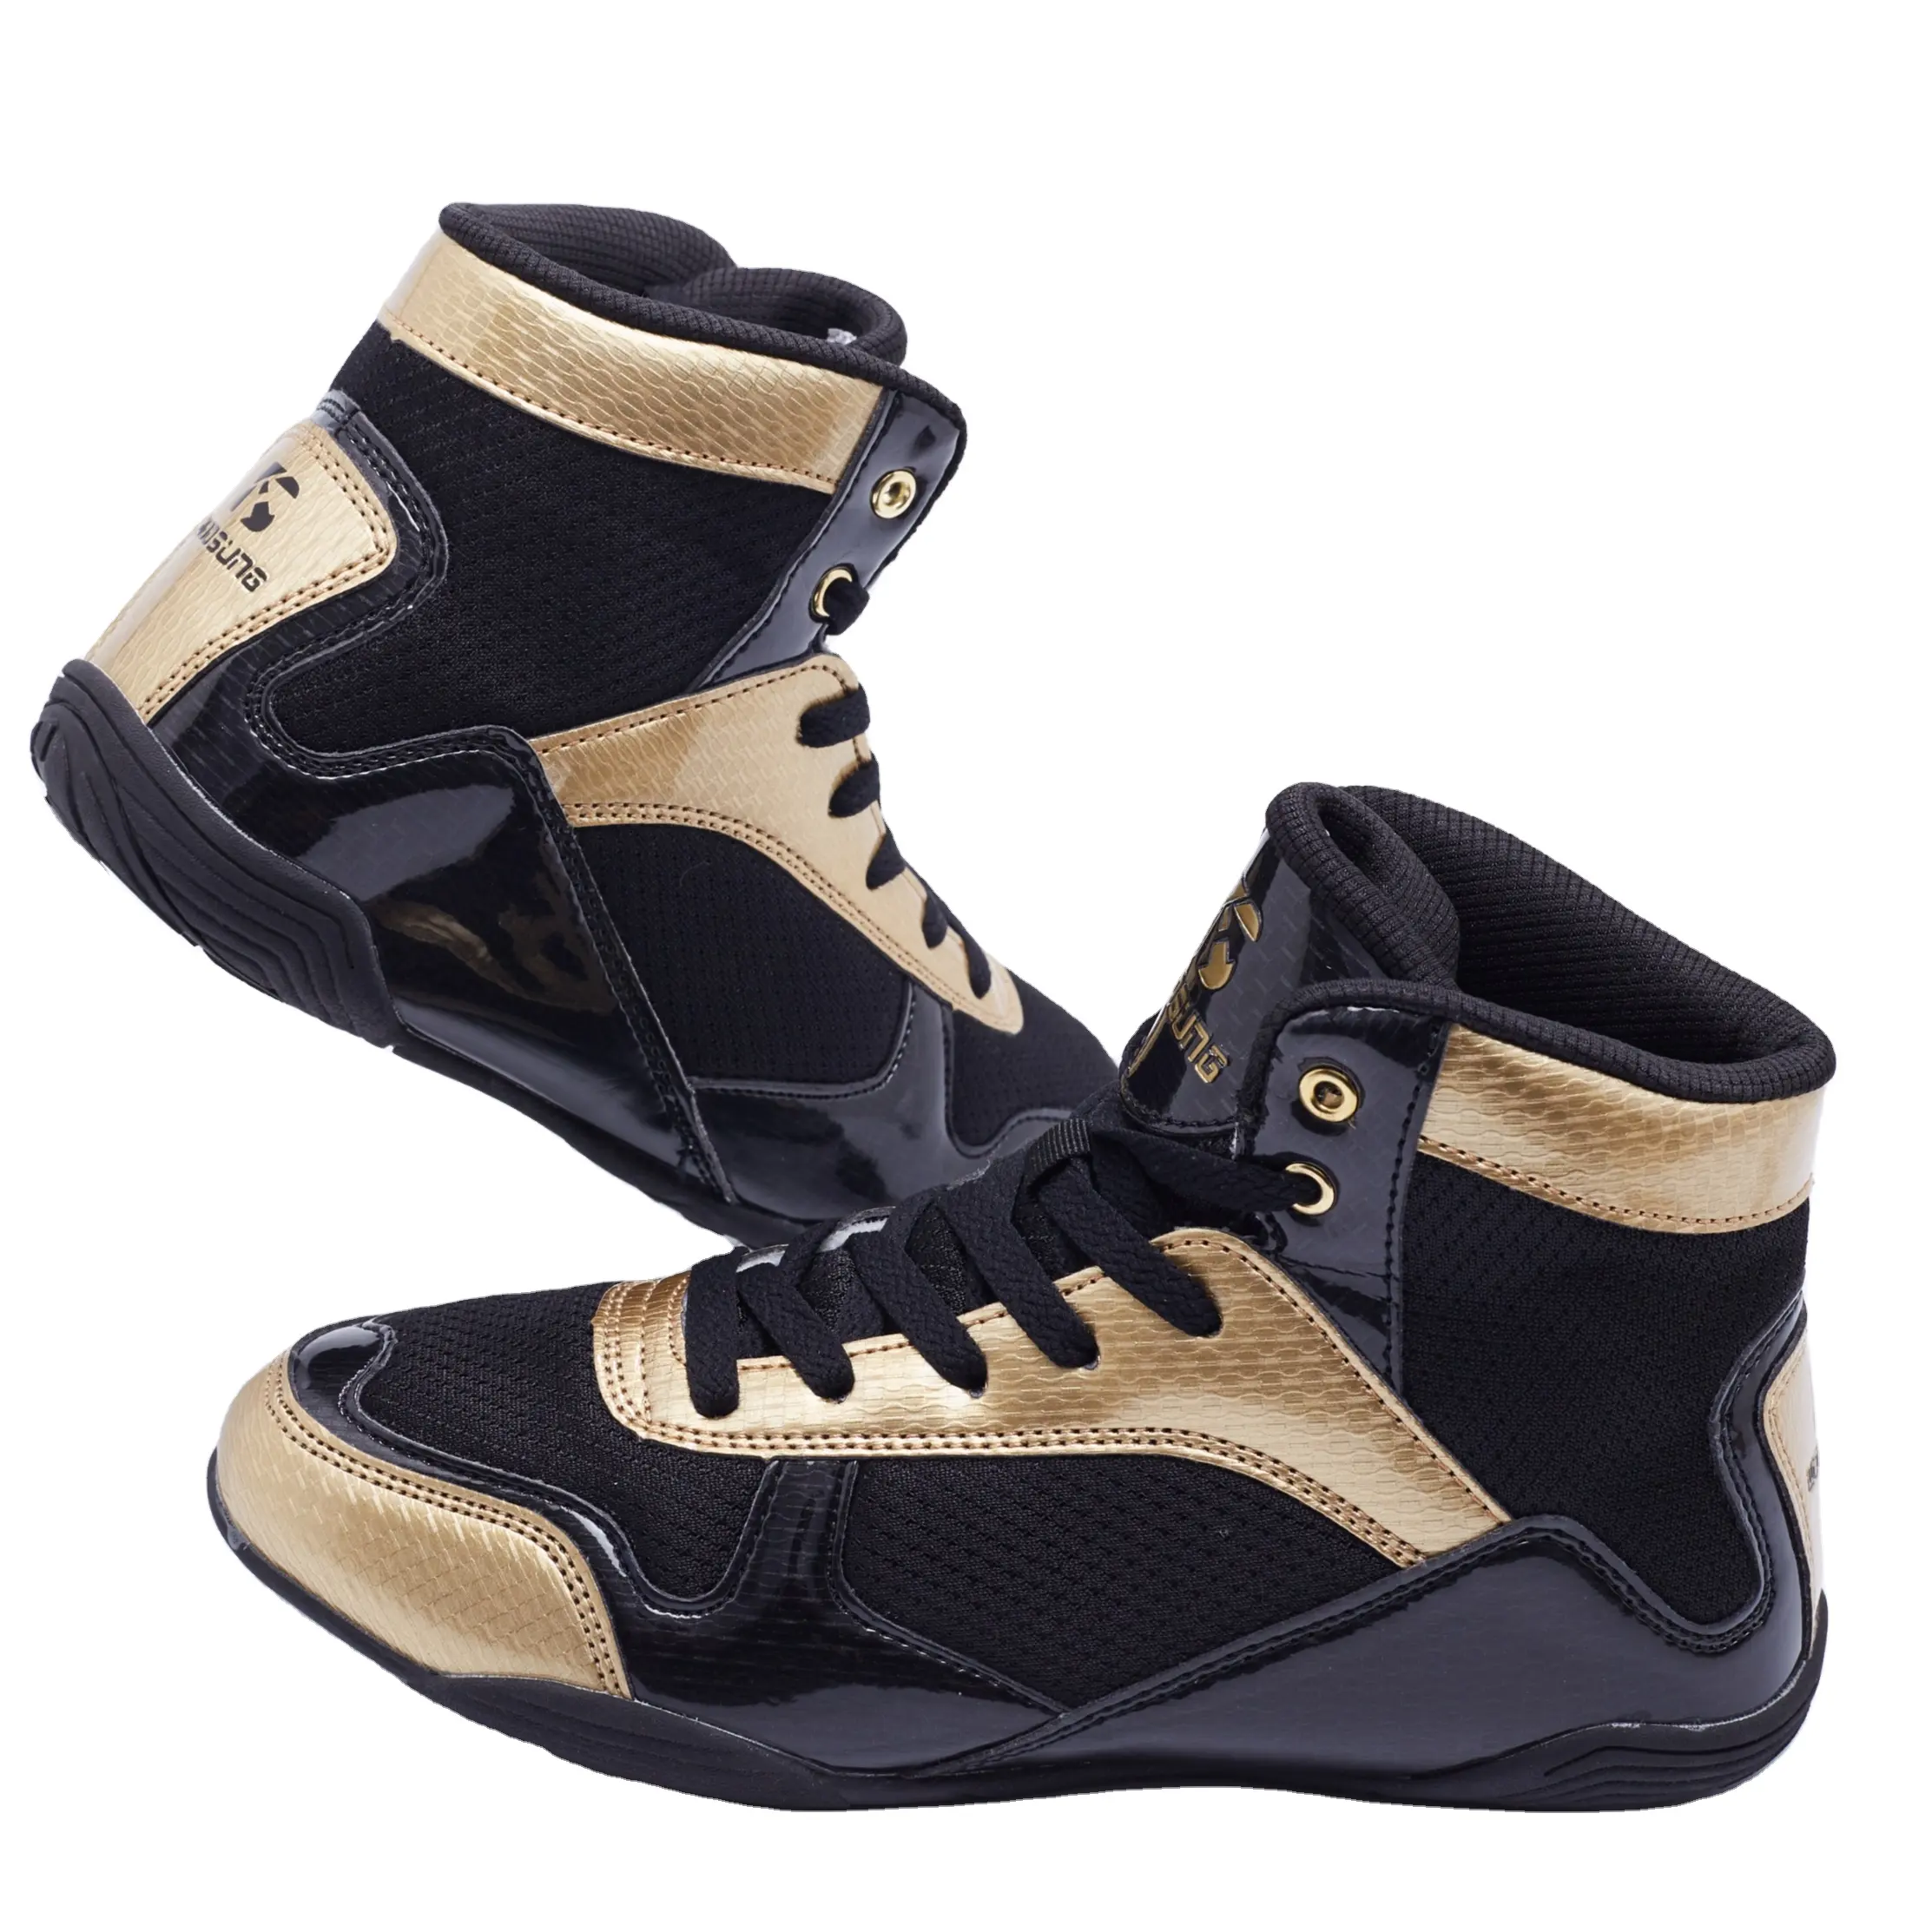 Woosung उच्च स्तर आपूर्तिकर्ताओं साबर चमड़े मुक्केबाजी जूते outsole के सोने के लिए मुक्केबाजी बूट बिक्री